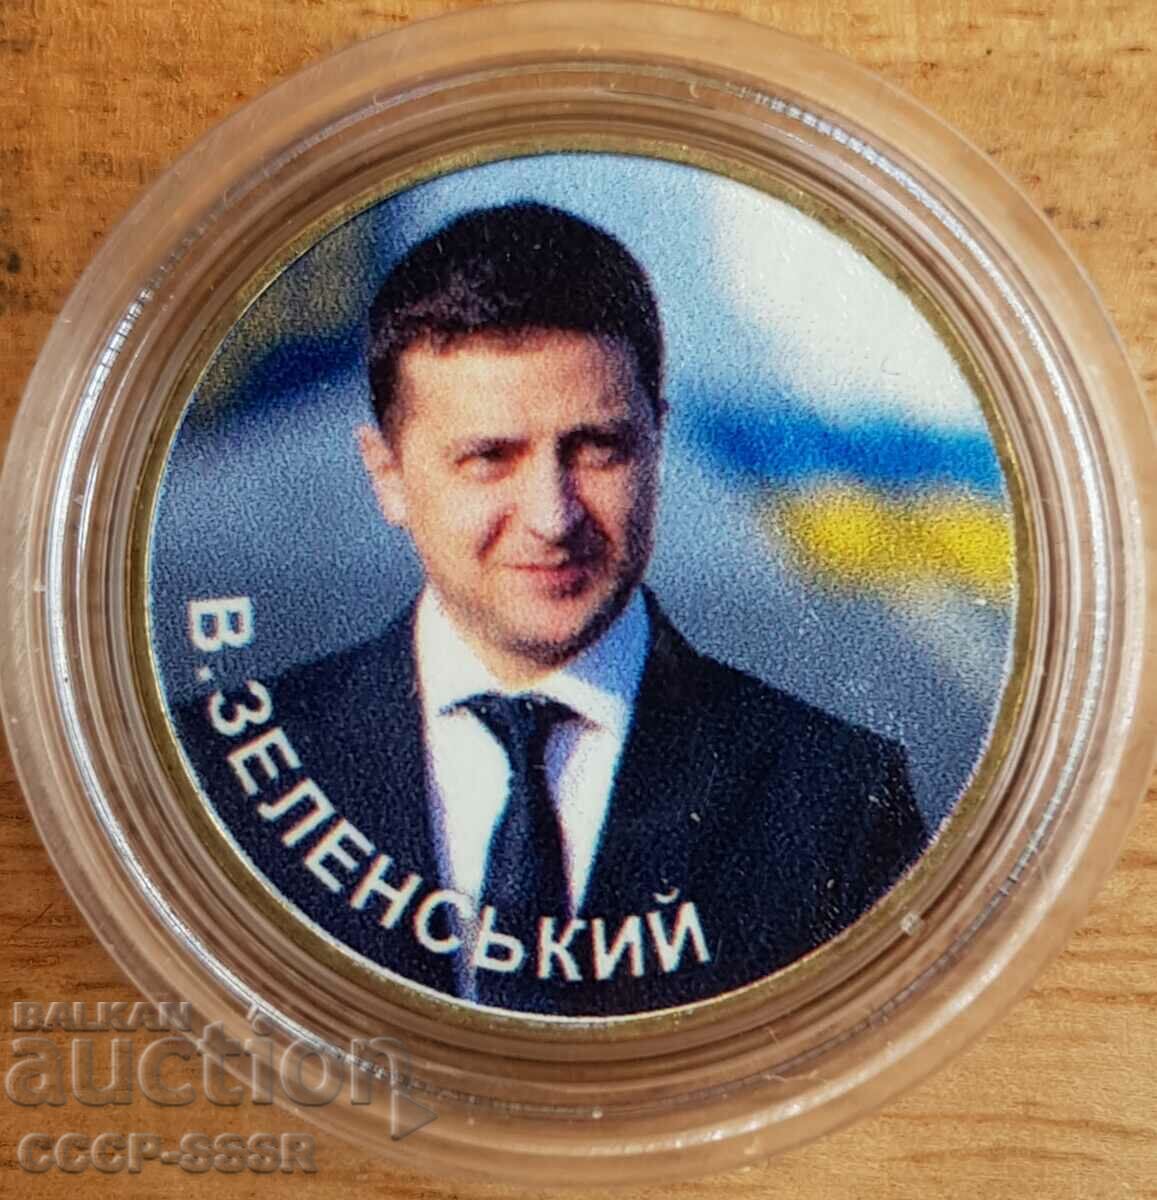 Ukraine 1 mane, Zelensky V.A. President Ukraini, limited edition